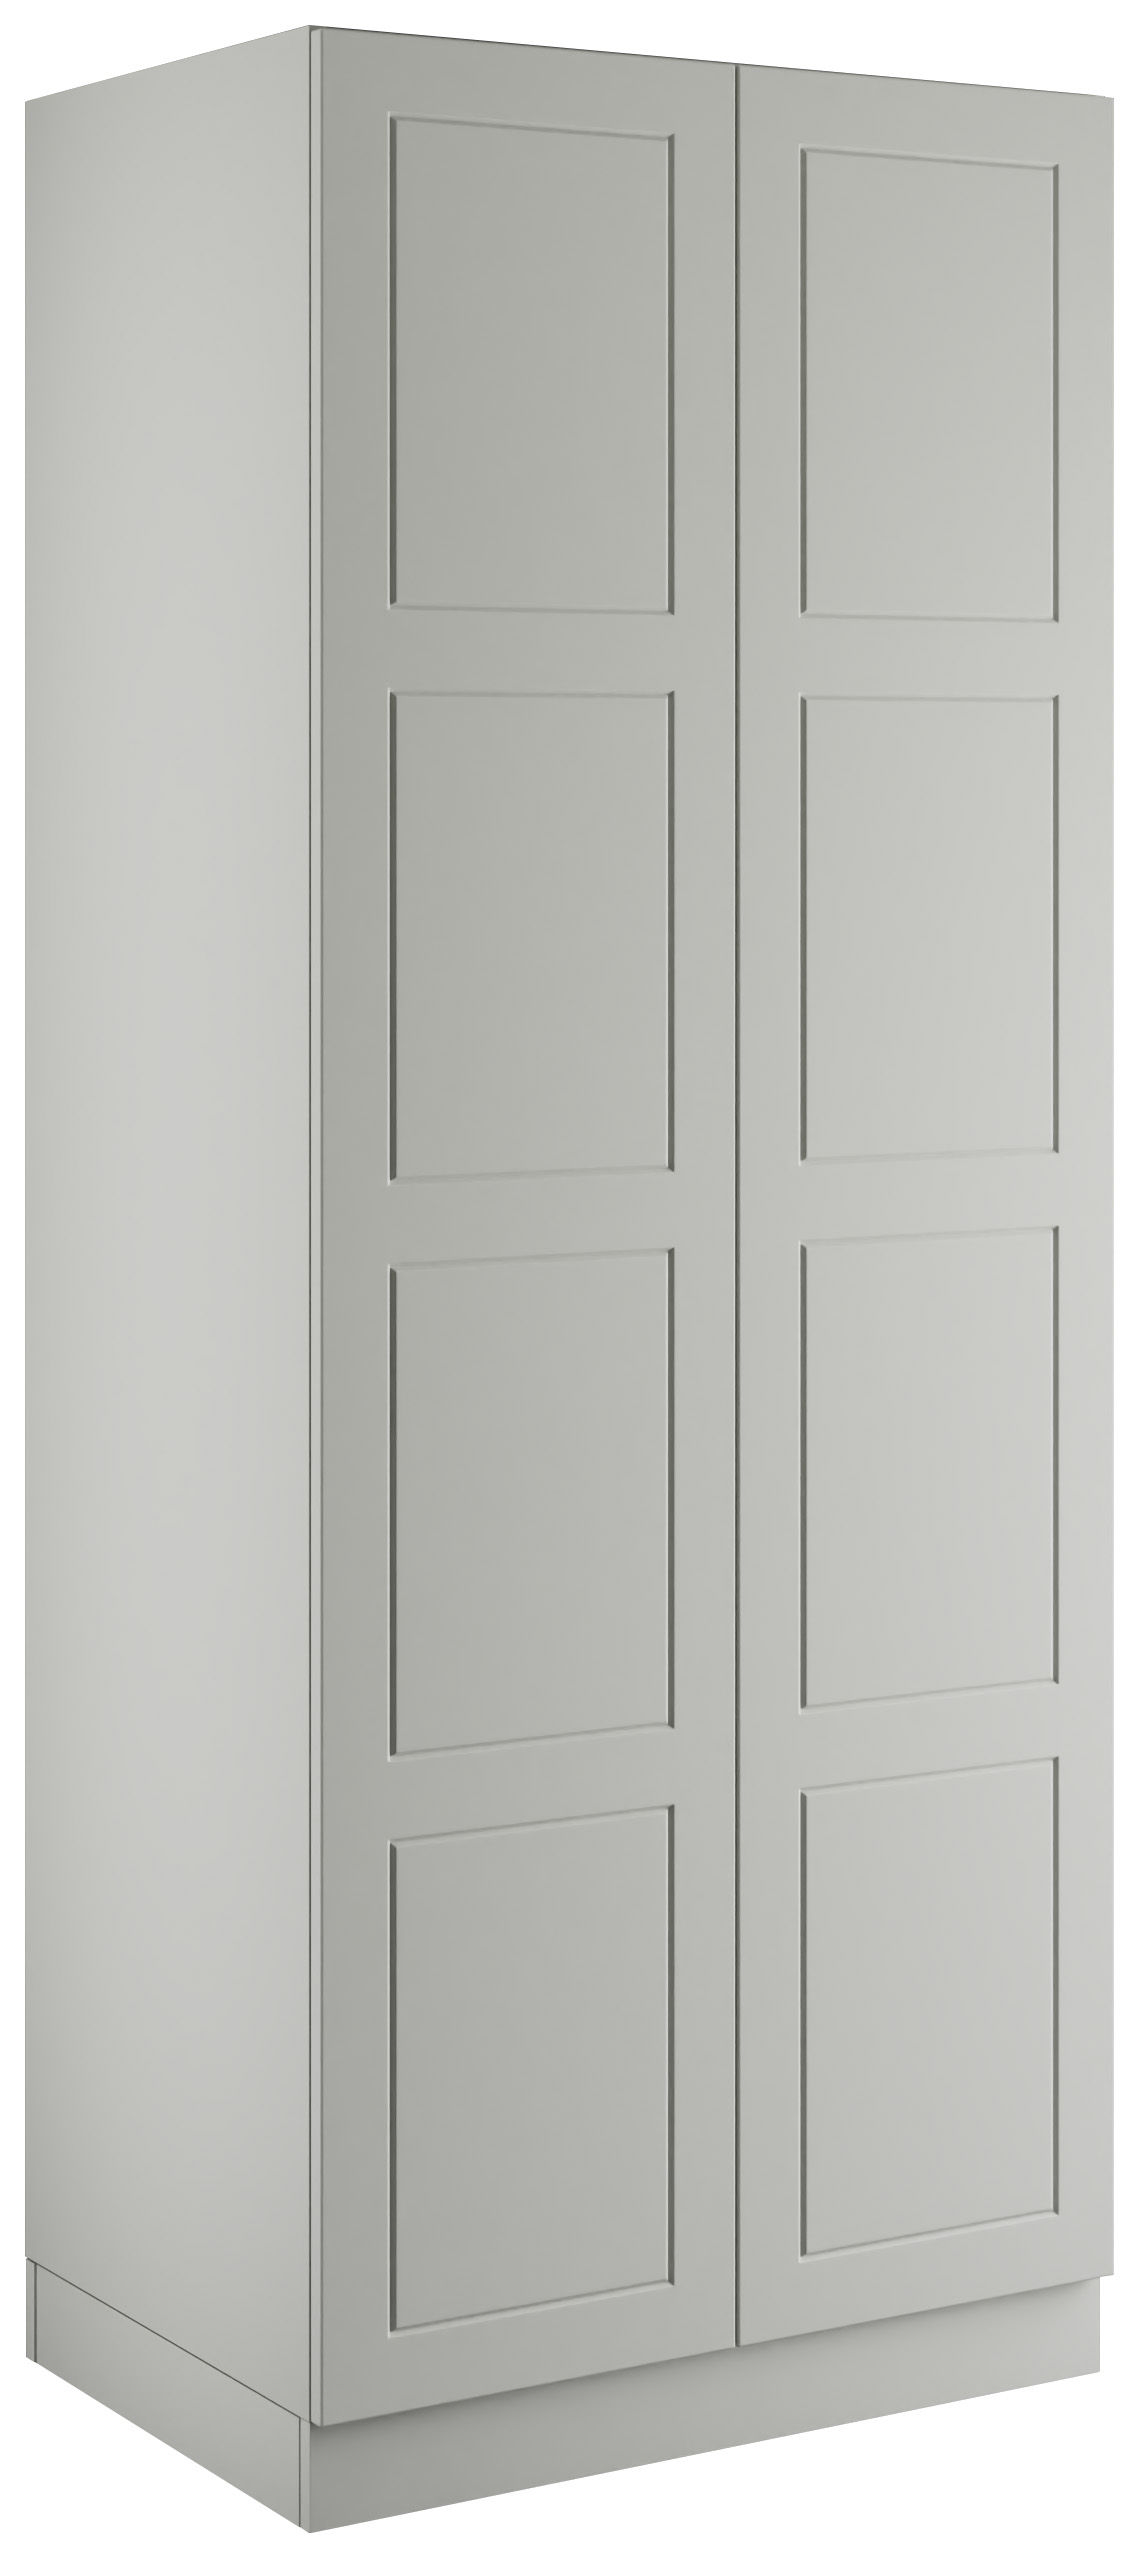 Bramham Light Grey Double Wardrobe with Double Rail - 900 x 2260 x 608mm